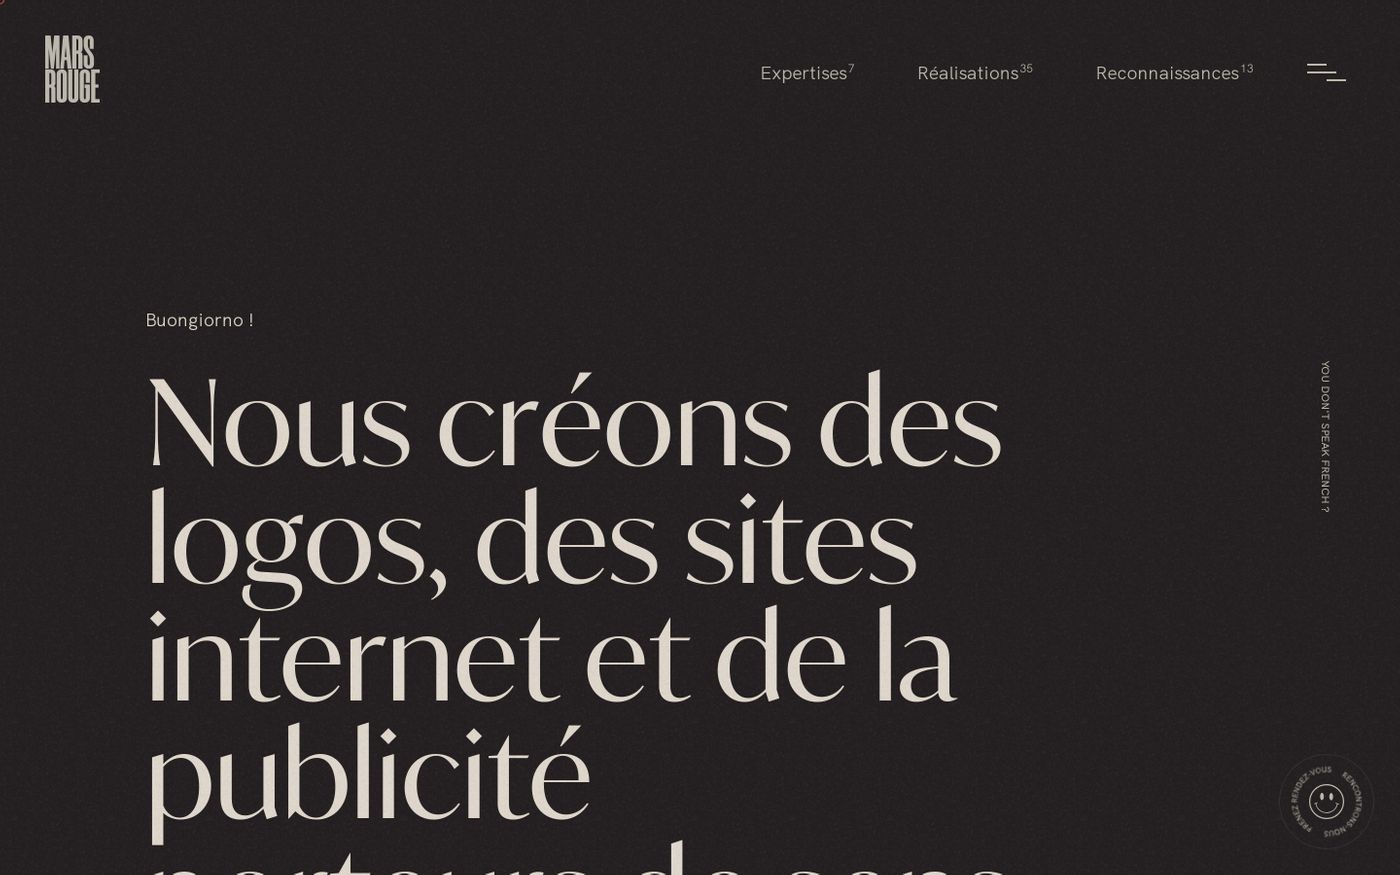 Screenshot of Mars rouge website